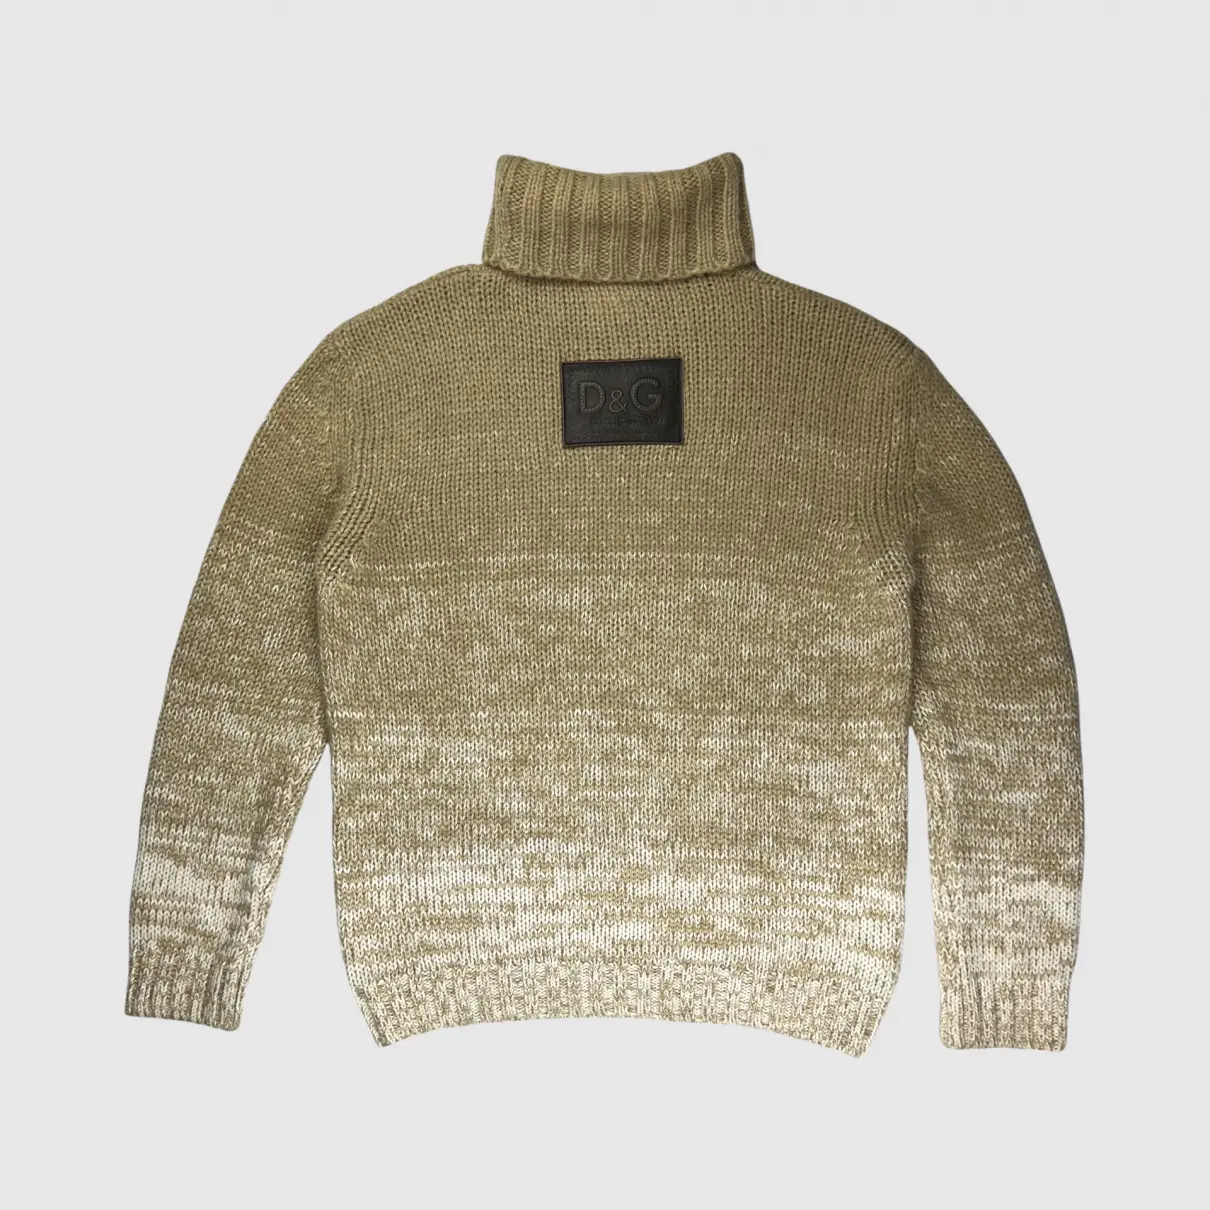 Buy D&G Wool pull online - Vintage